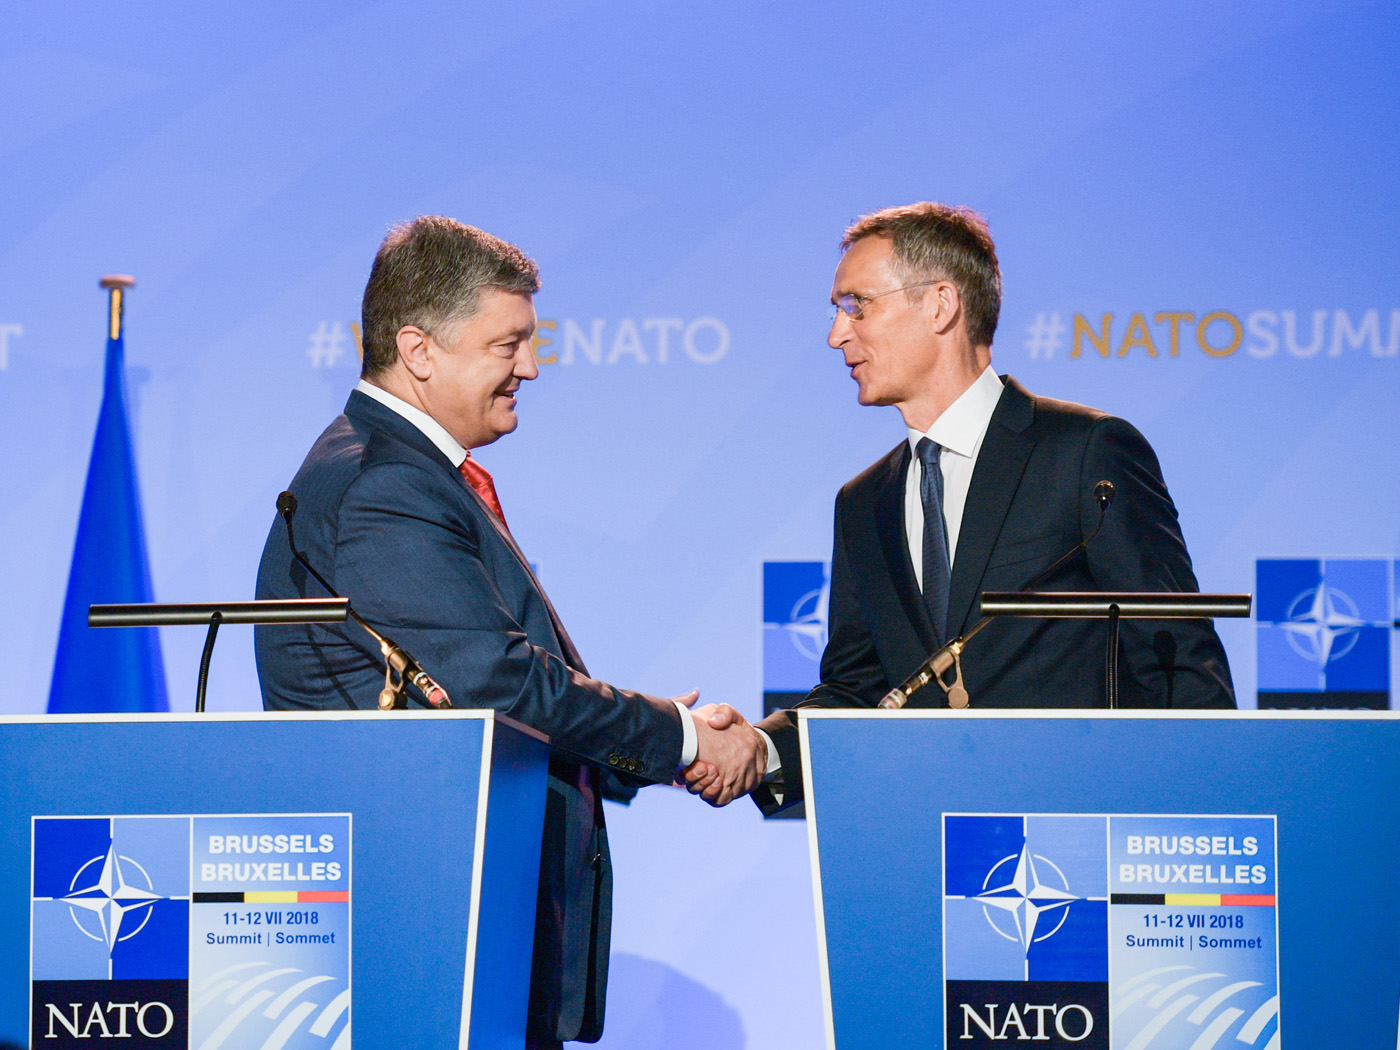 Петро Порошенко та Єнс Столтенберг запевняють, що НАТО має тверду позицію щодо підтримки суверенітету й територіальної цілісності України. Фото Миколи ЛАЗАРЕНКА